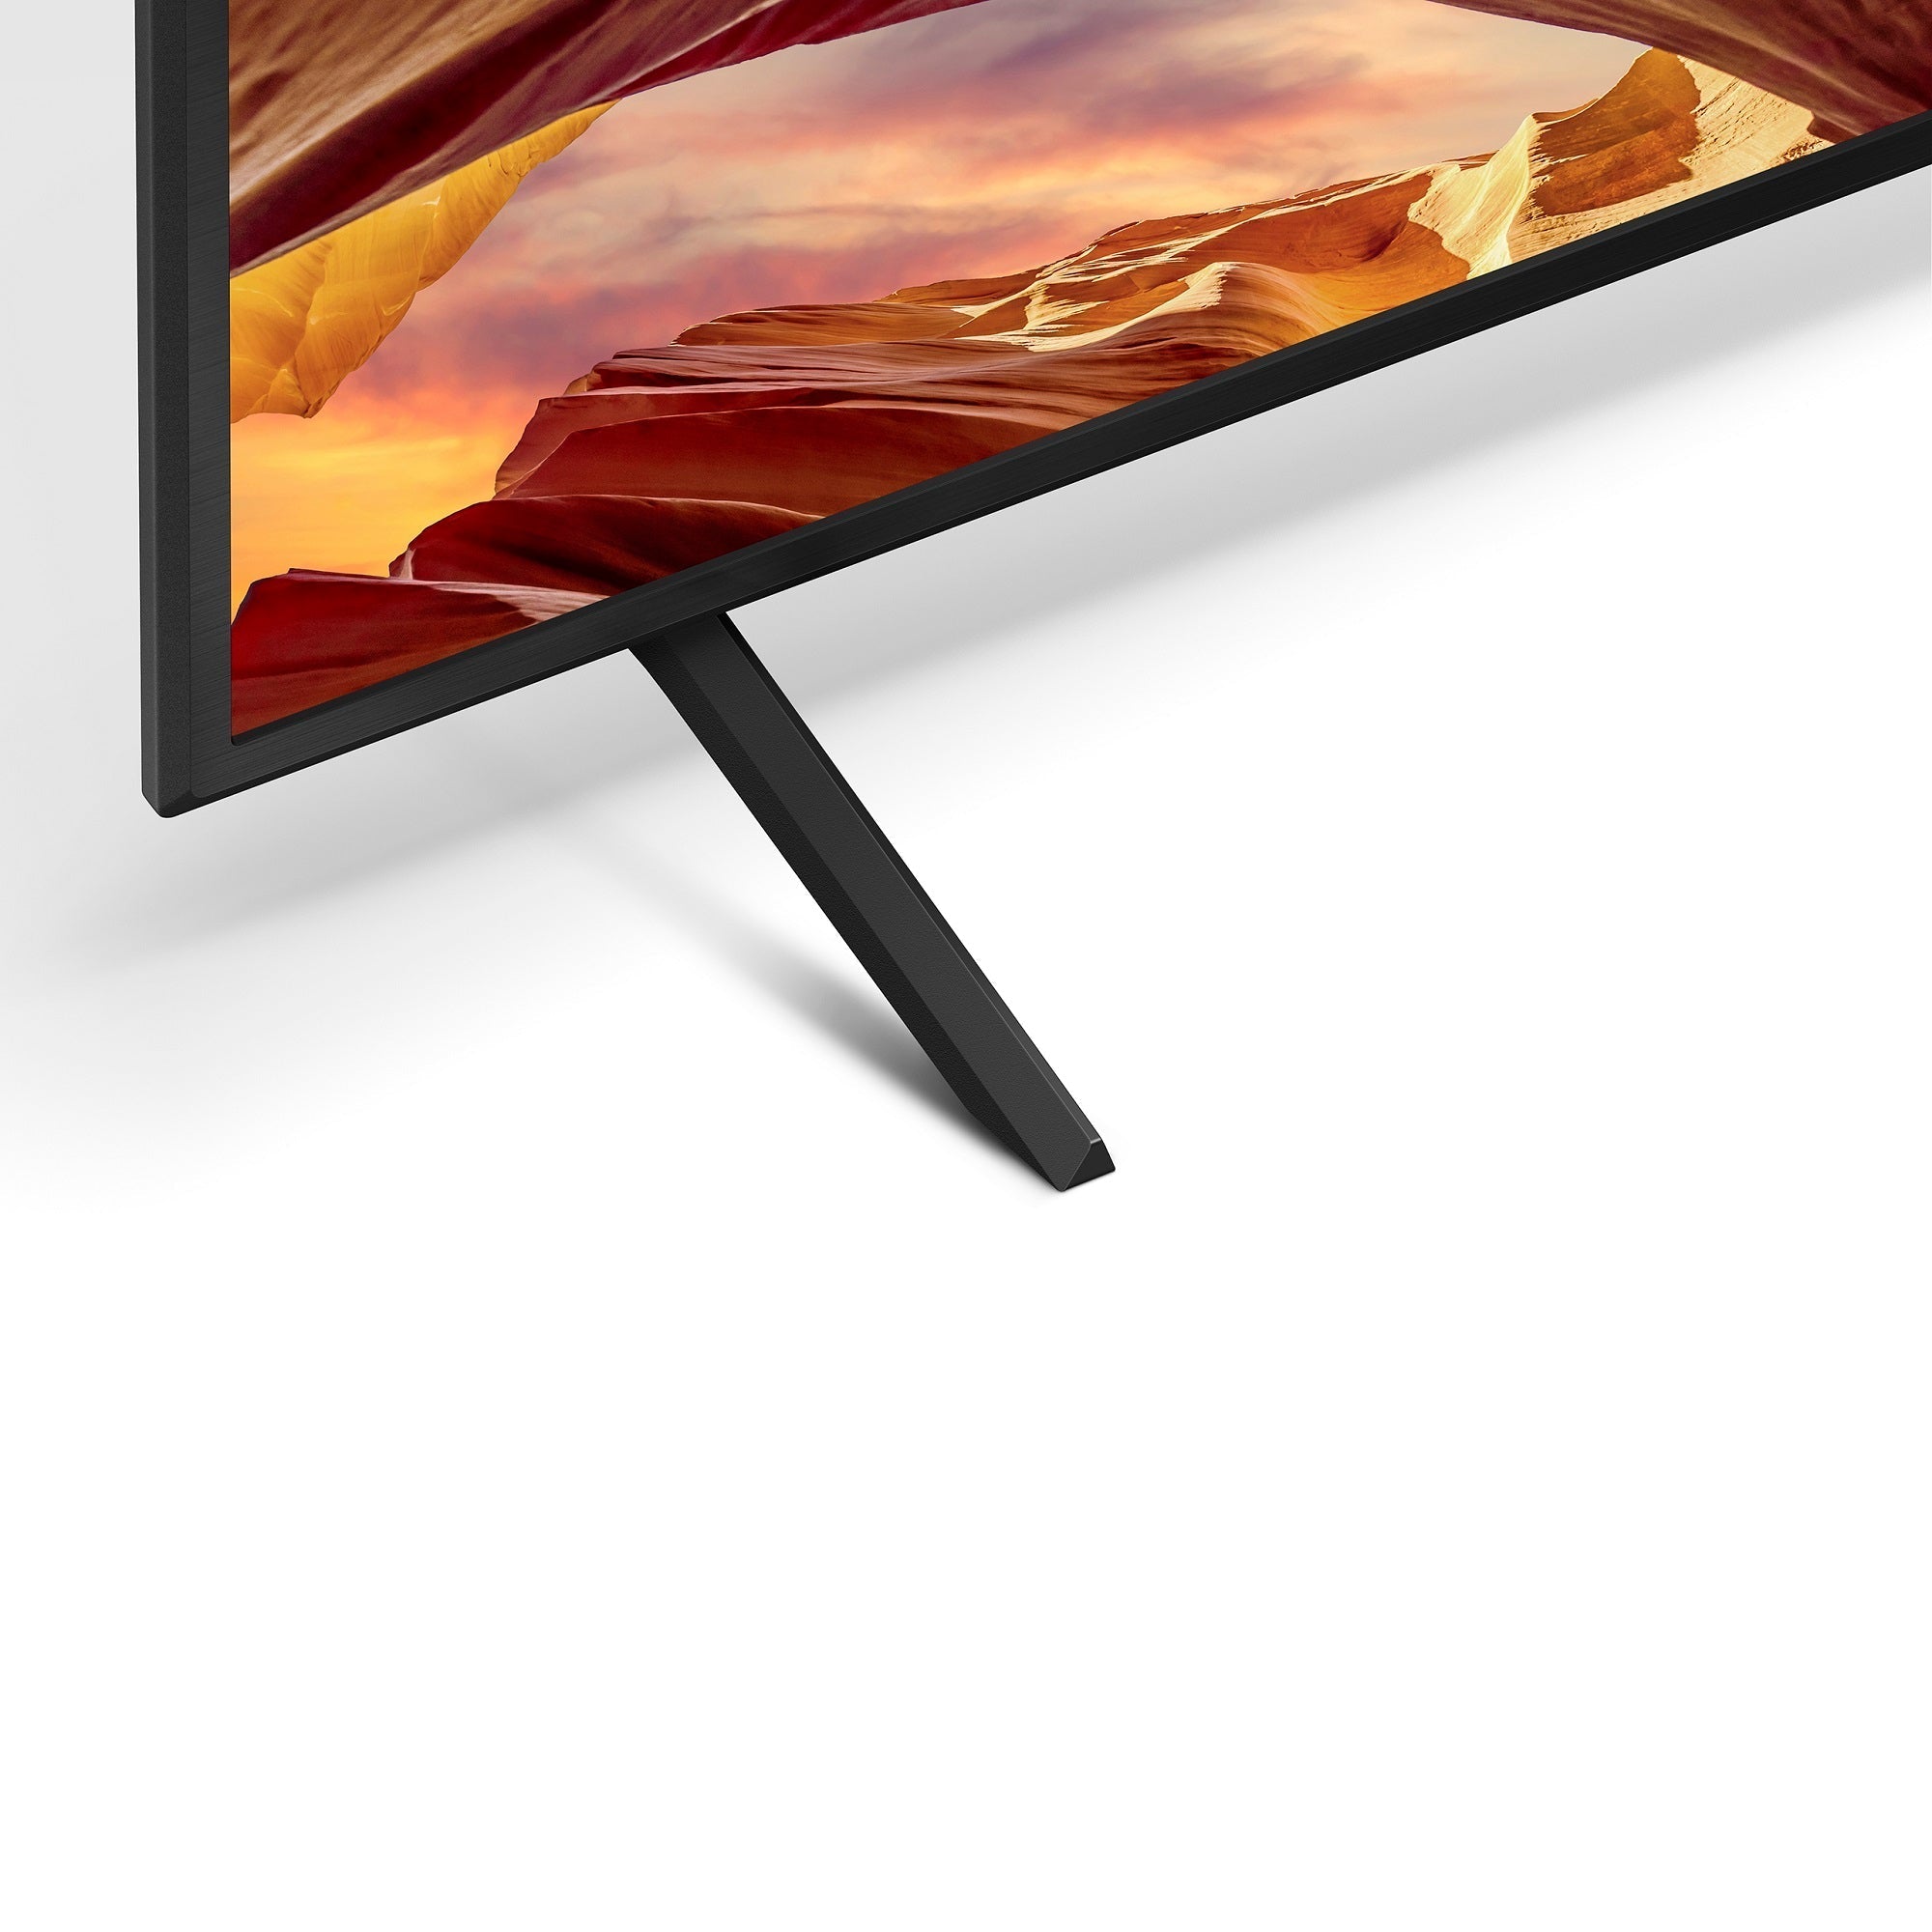 טלוויזיה 50 אינץ X75WL ‏| 4K Ultra HD | HDR | Google TV